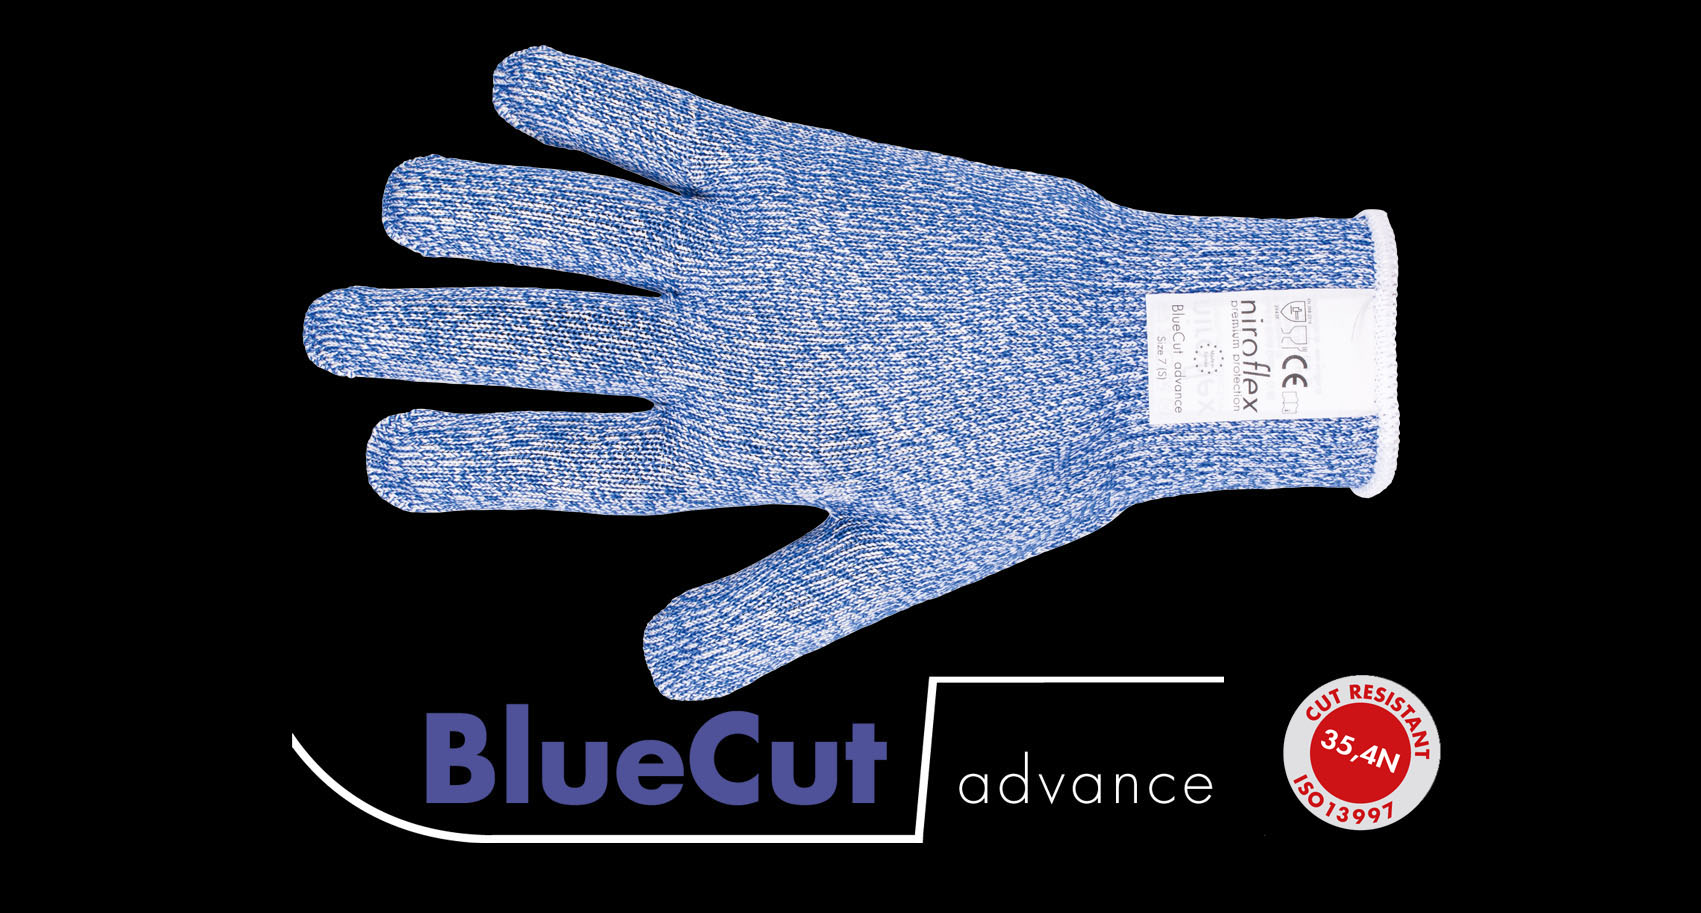 BlueCut advance, Schnittschutzhandschuh Lebensmittel, Schnittfeste Handschuhe Lebensmittel, Schnittschutz Handschuh, Schnittschutzhandschuhe Metzger, Fleischer Zubehör, Cut resistant gloves, stainless steel glove